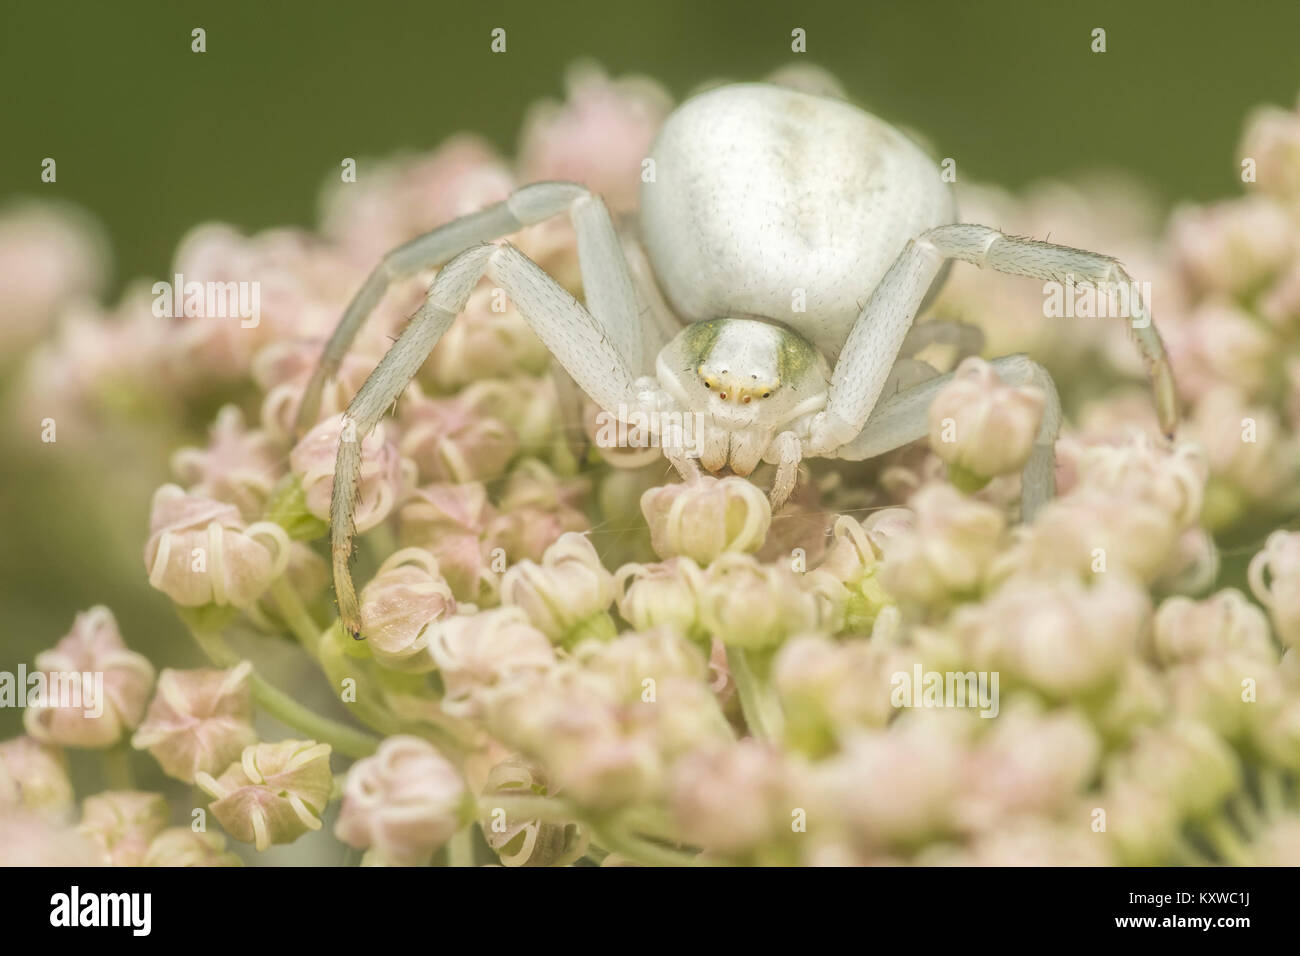 Araignée crabe (Misumena vatia) qui se tient en embuscade sur un umbellifer fleur. Cahir, Tipperary, Irlande. Banque D'Images